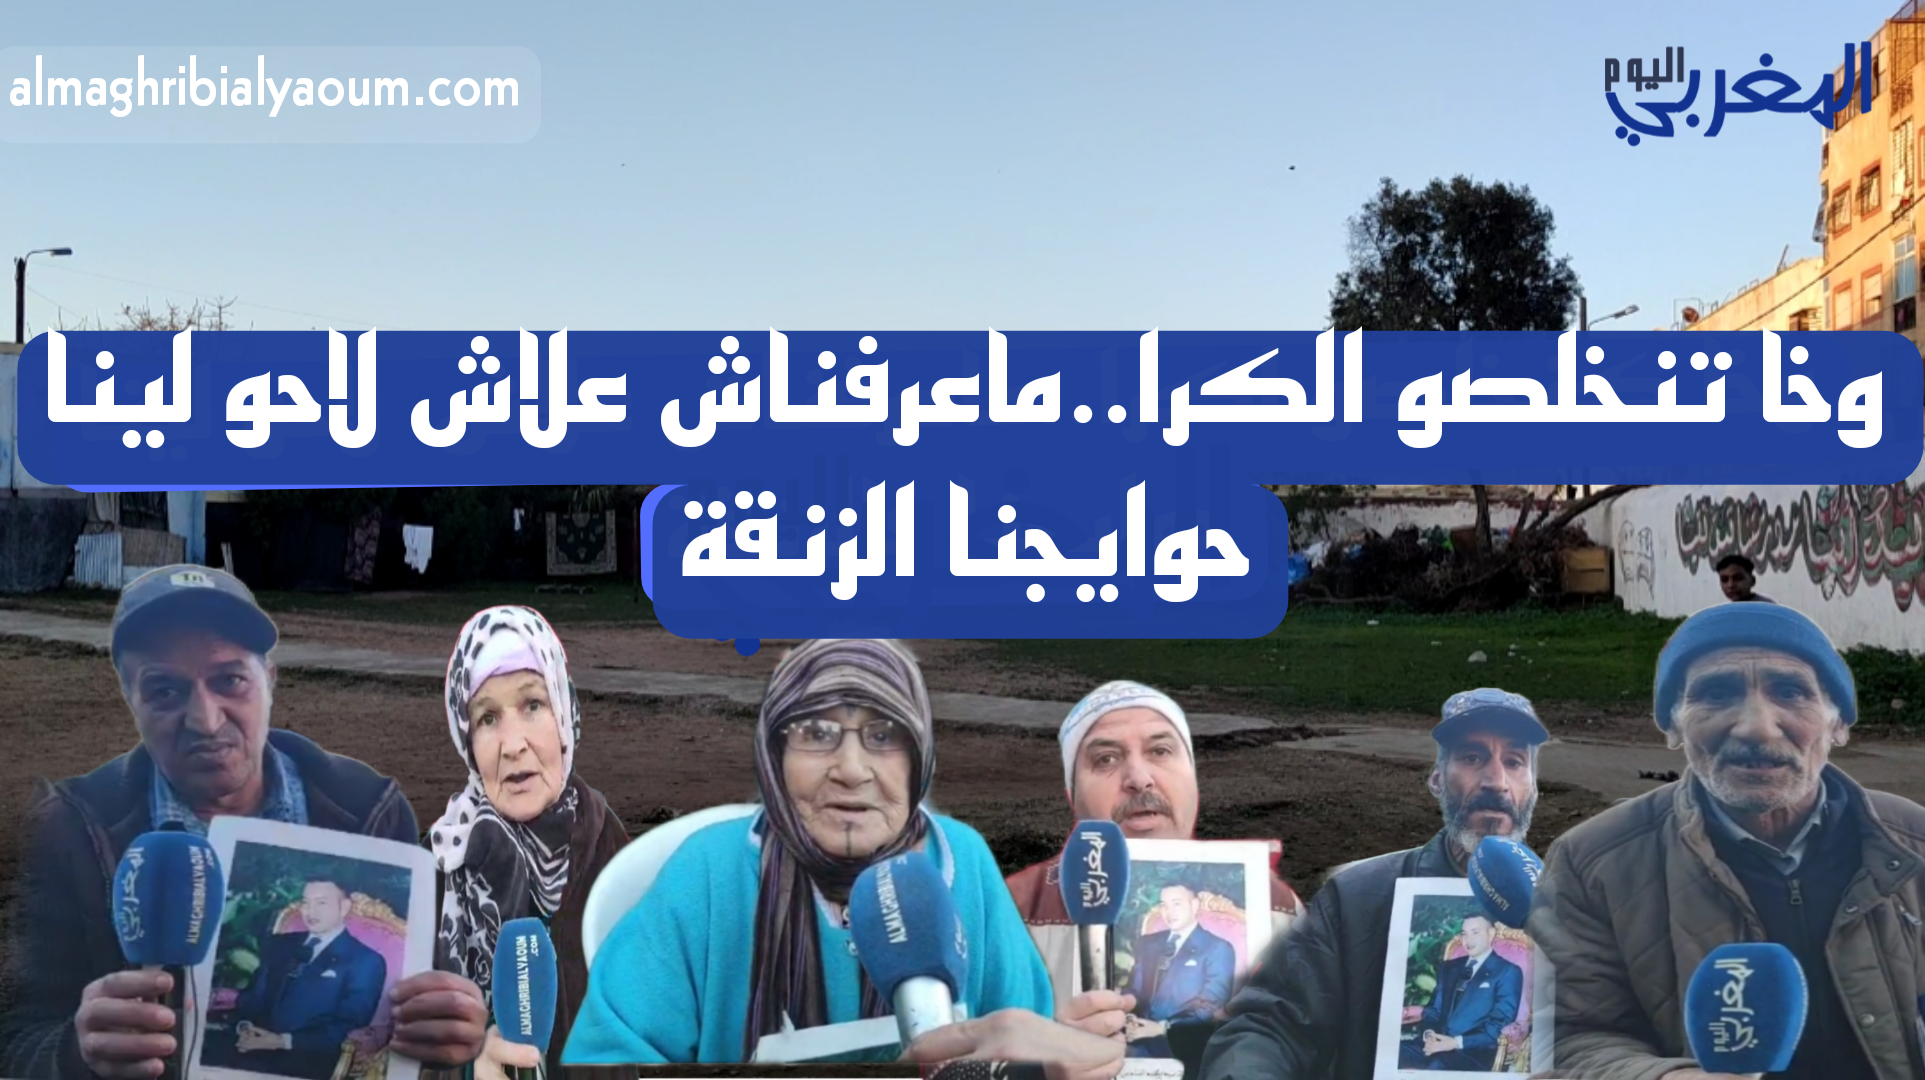 11 عائلة بسيدي مومن مهددة بالإفراغ  في ظروف غامضة